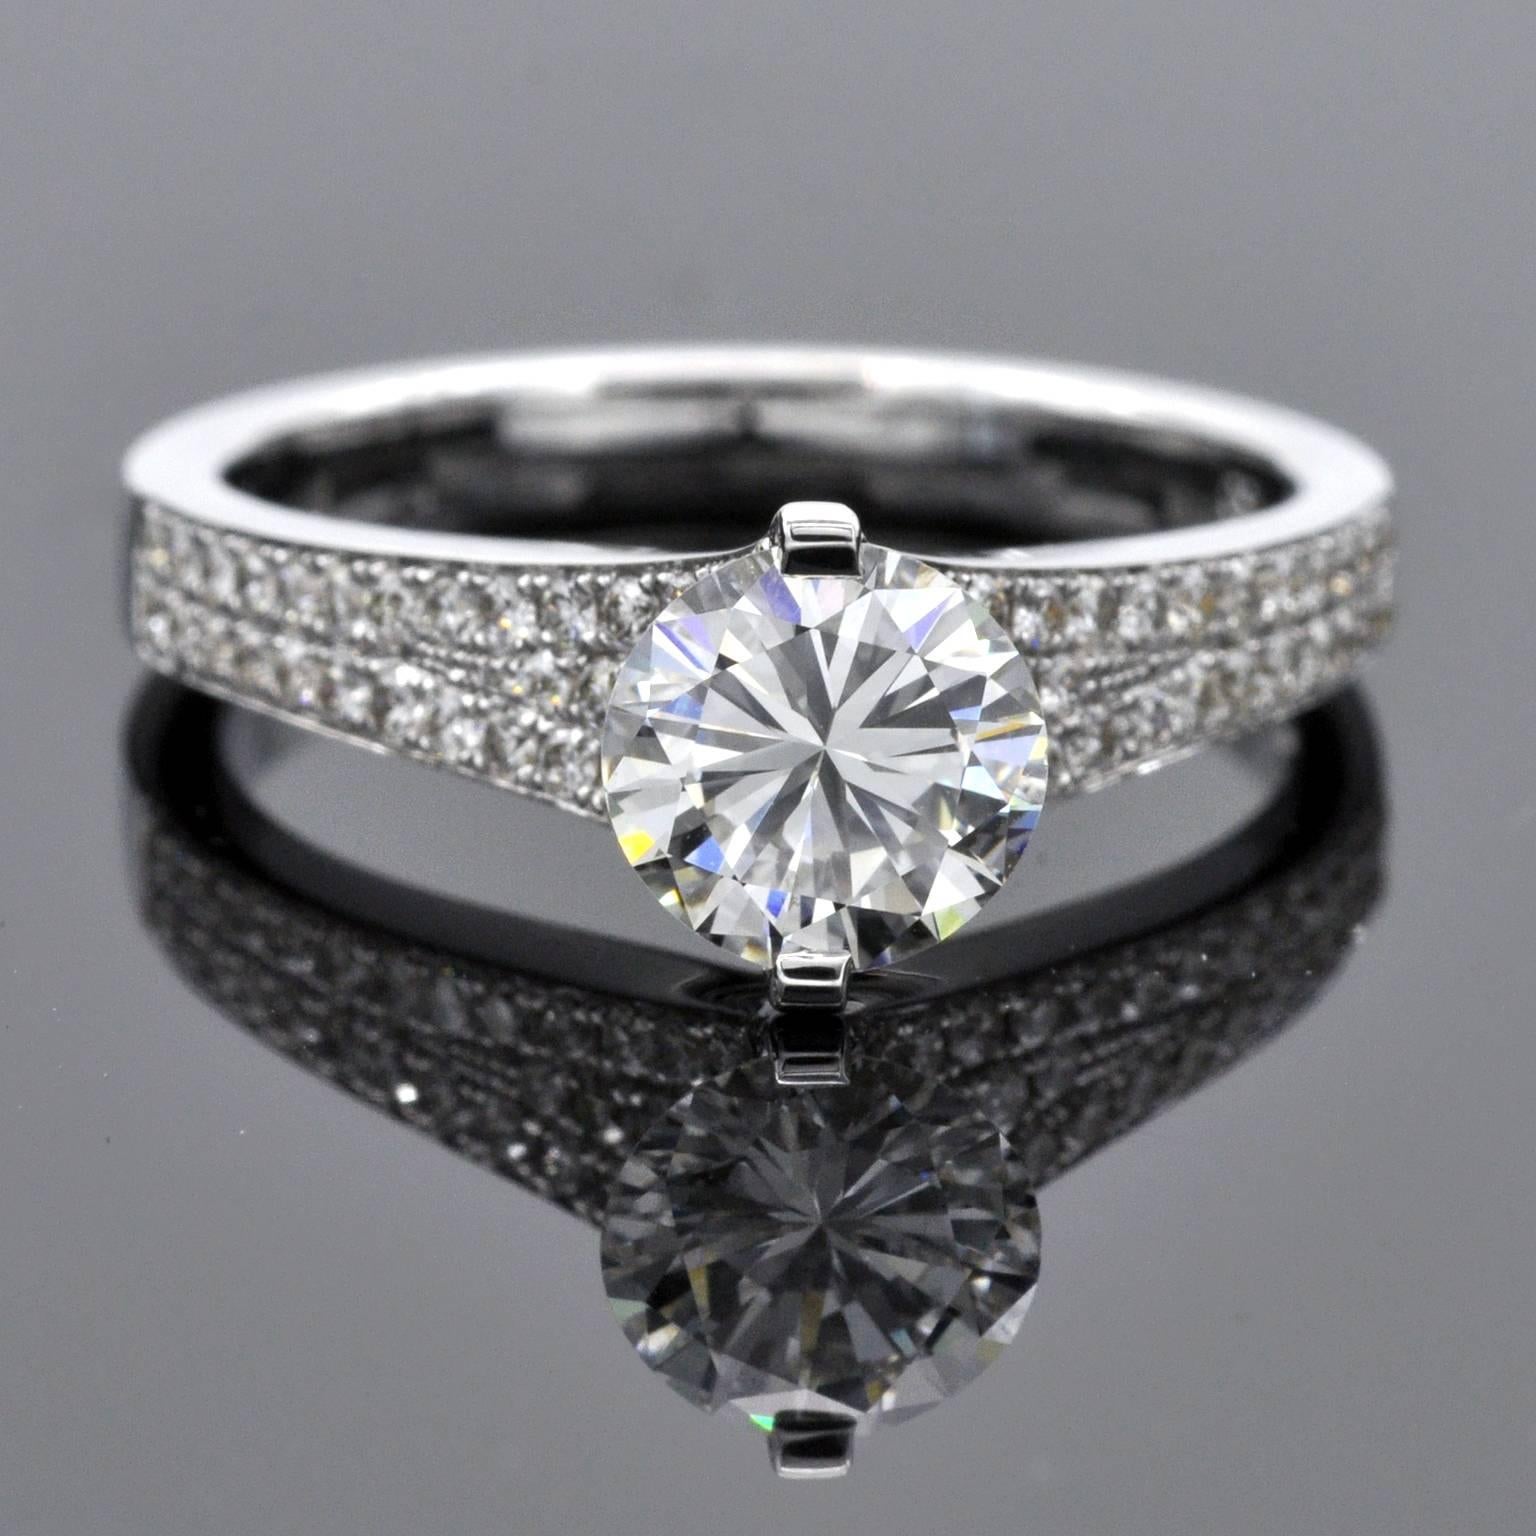 Einzigartiger Verlobungsring mit einem modernen, einzigartigen Design. Der Diamant ist mit zwei kräftigen Zacken gefasst, die ihn so in Szene setzen, dass das Licht den Stein am besten funkeln lässt. Das Band selbst ist mit 0,40 Karat Diamanten im